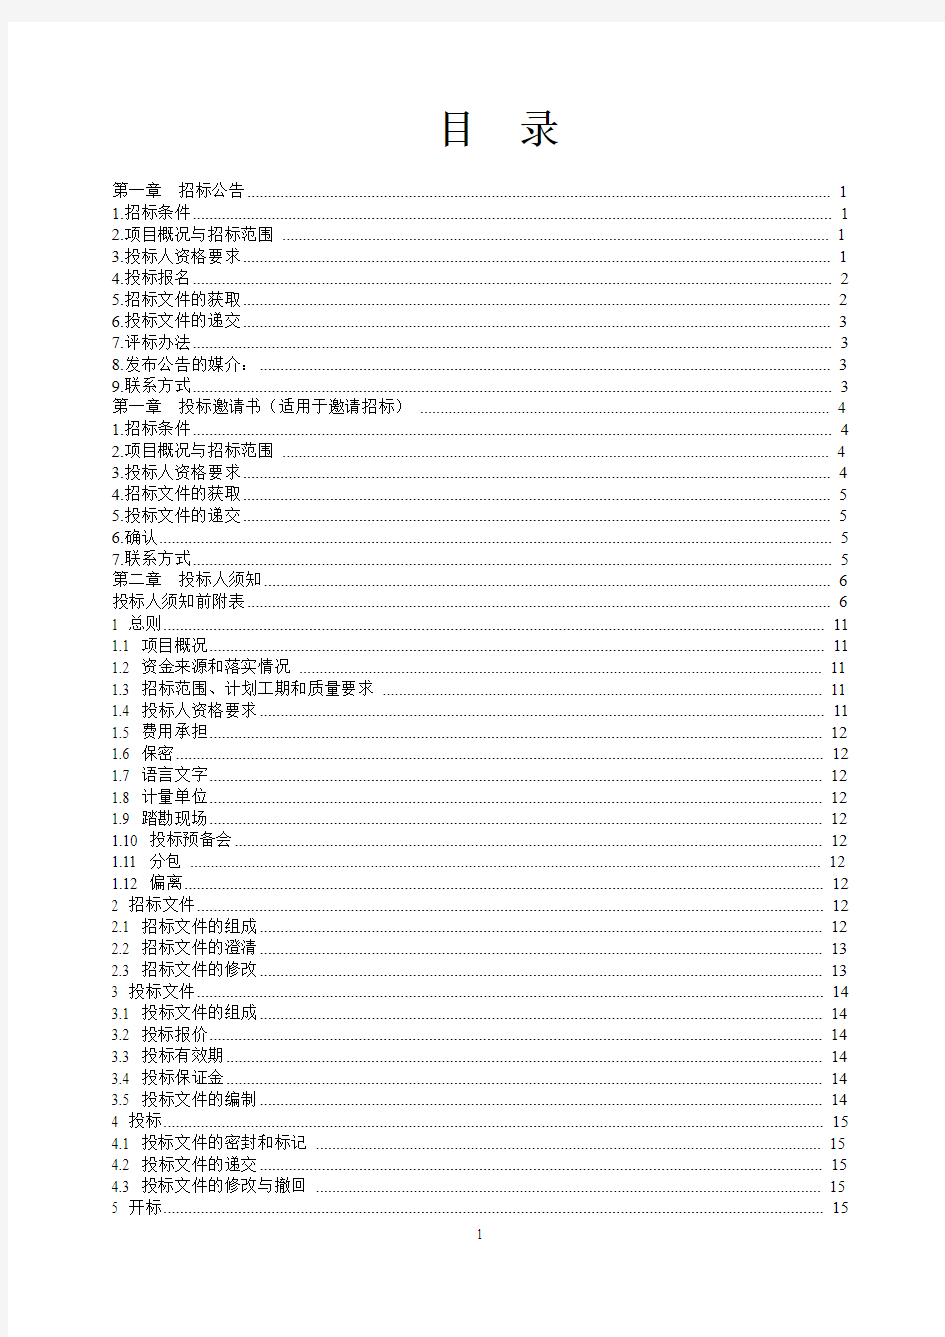 南宁市房屋建筑和市政工程施工招标文件范本(2013修订版)(综合评估法)20140501